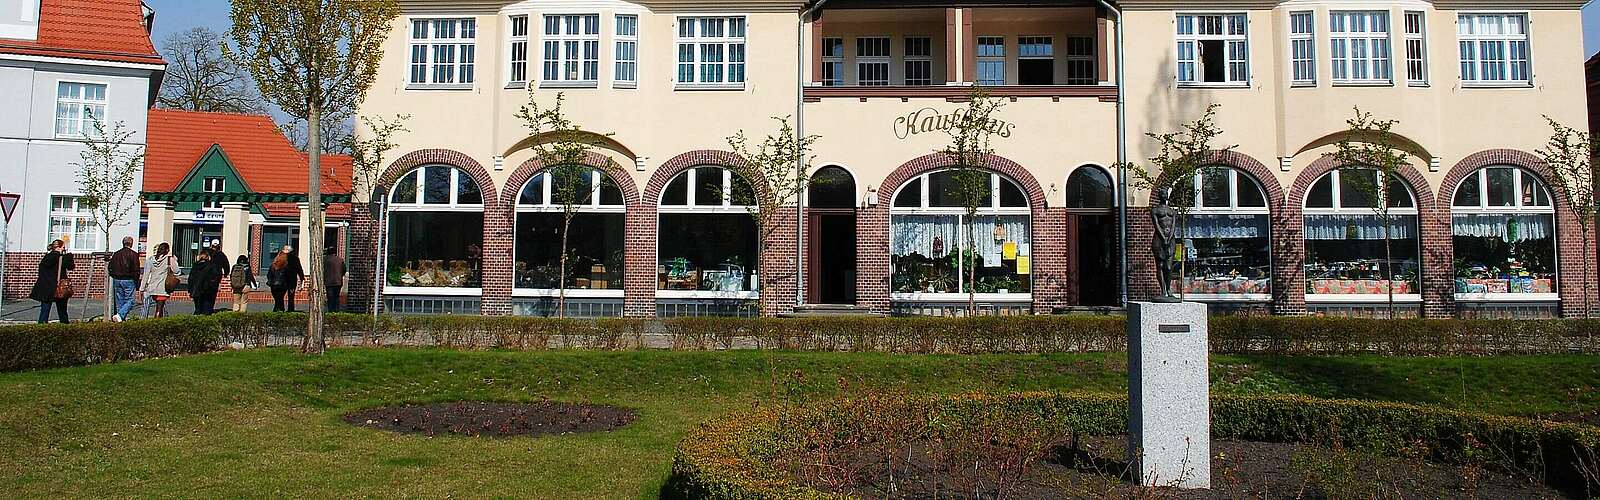 Blick auf das Kaufhaus der Gartenstadt Marga,
        
    

        Foto: Fotograf / Lizenz - Media Import/Claus-Dieter Steyer